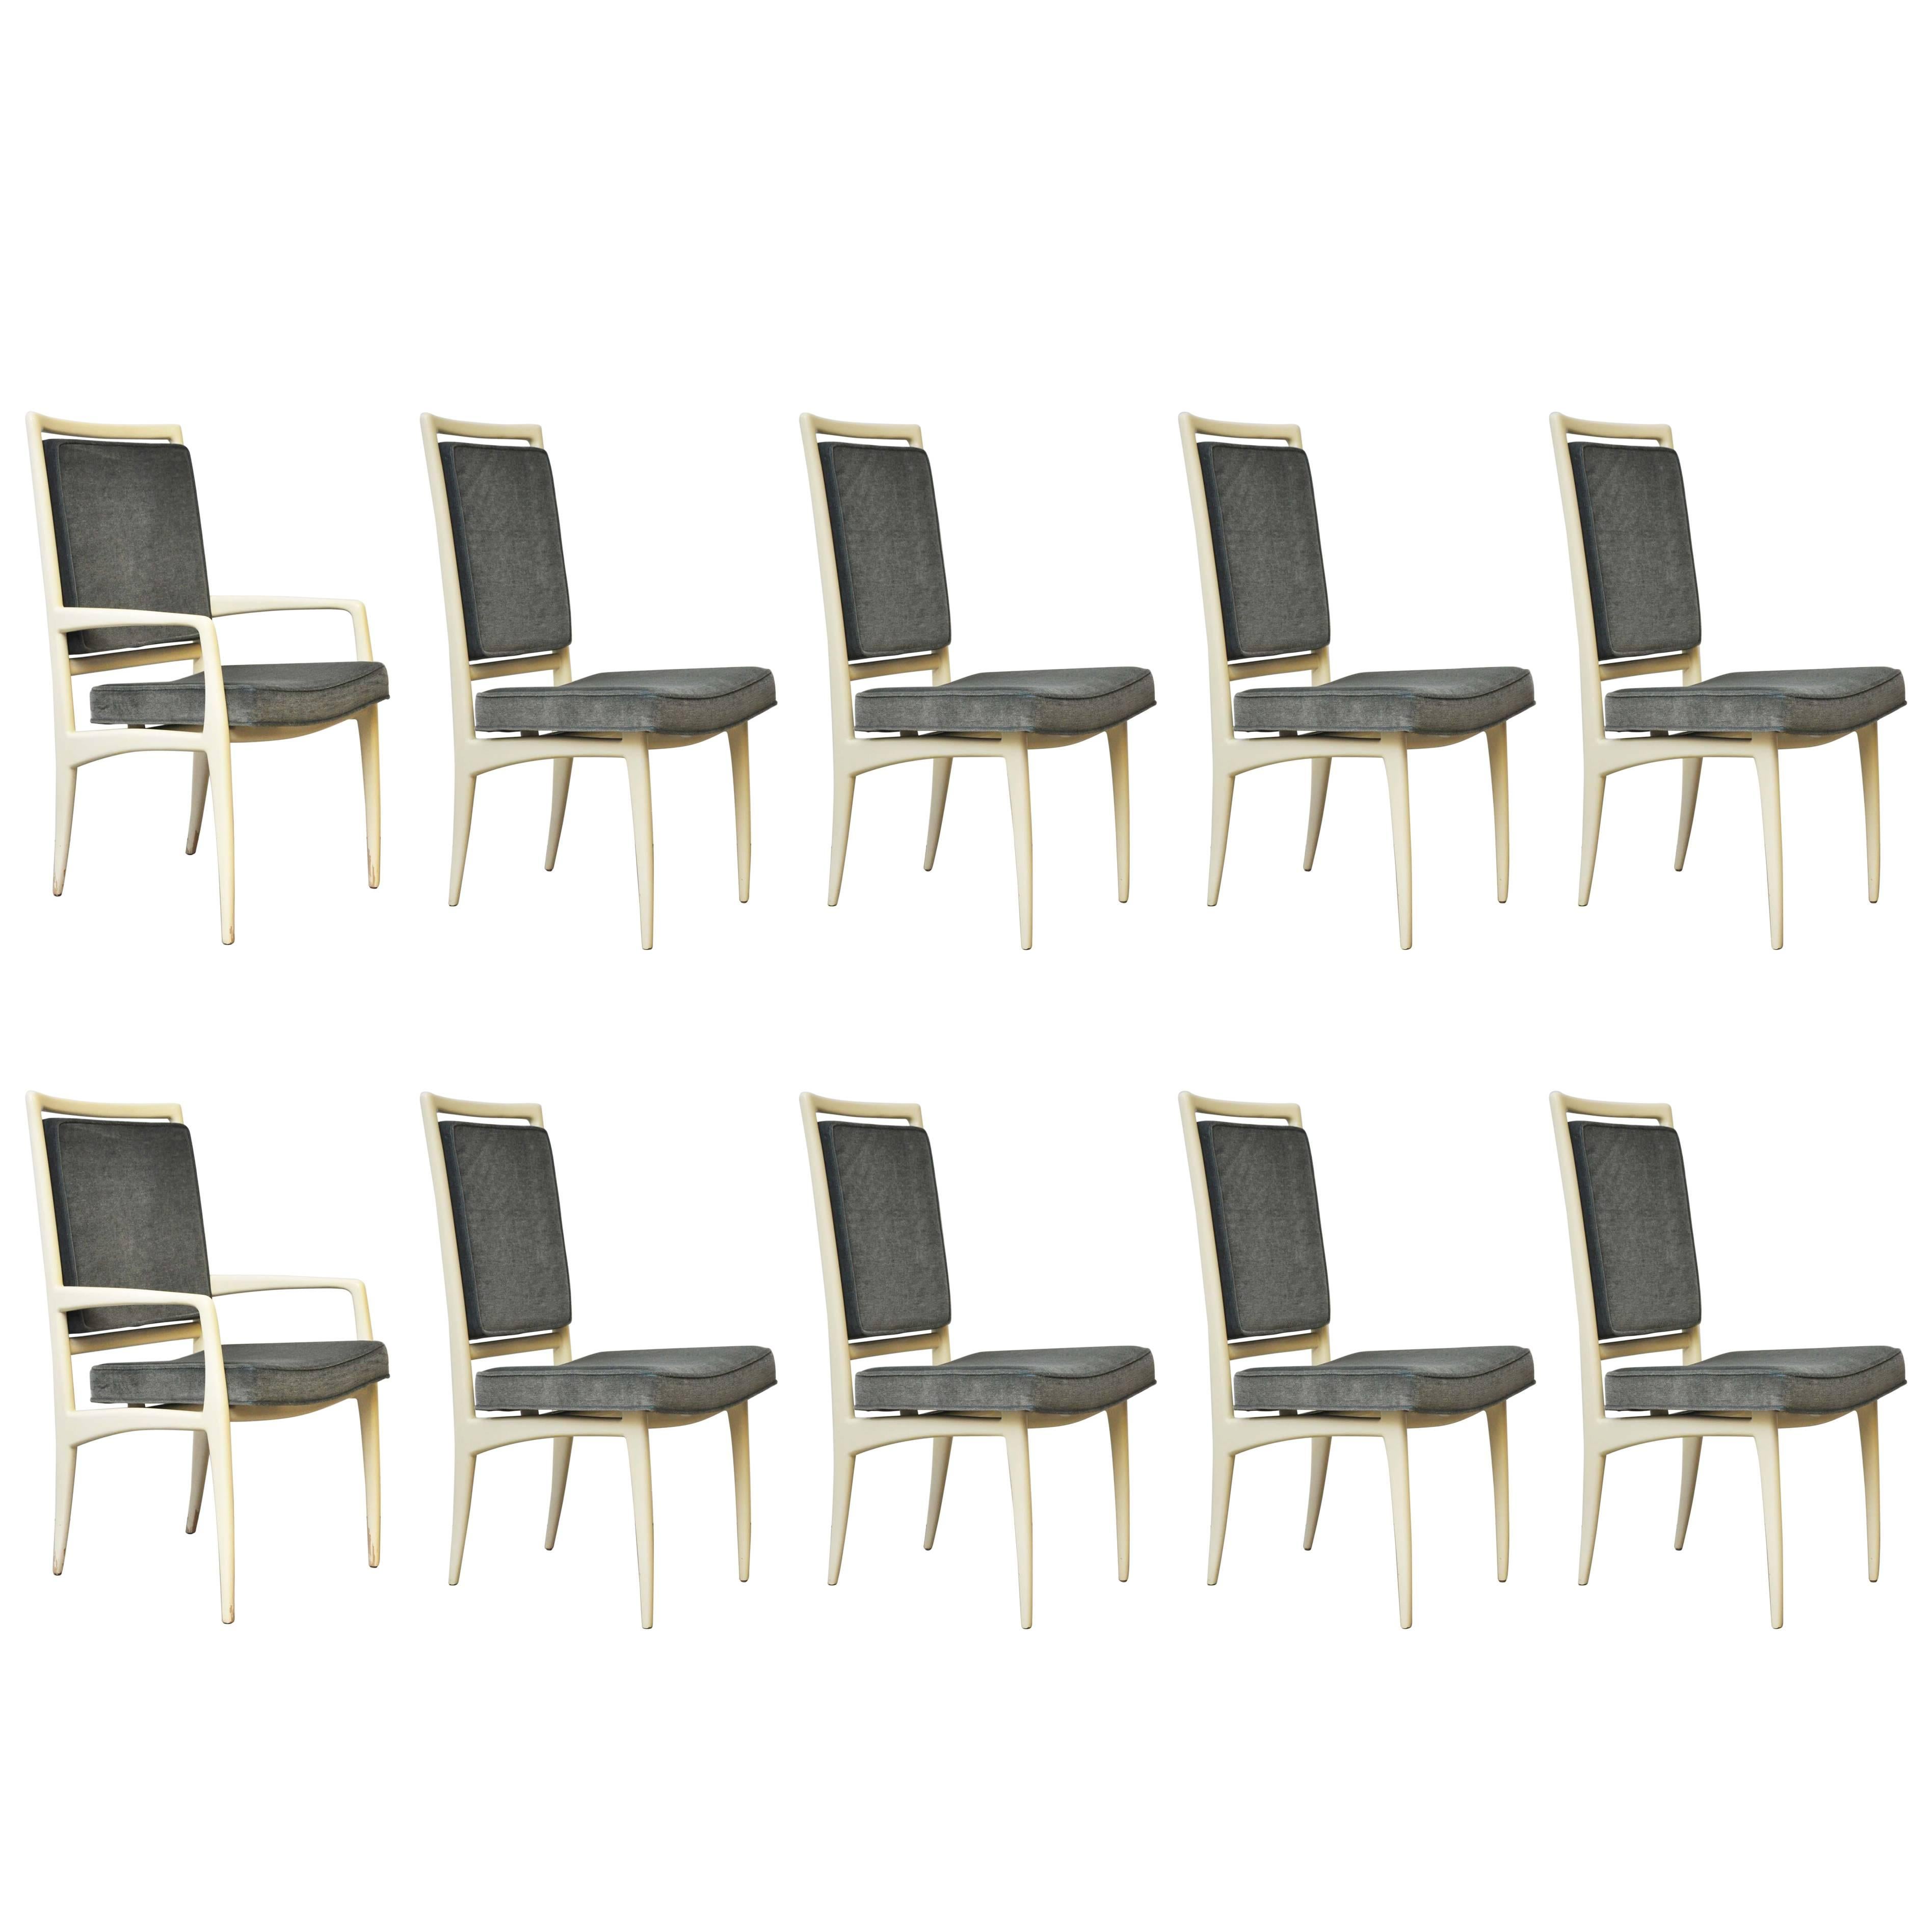 Vladimir Kagan Dining Chairs, Set of Ten